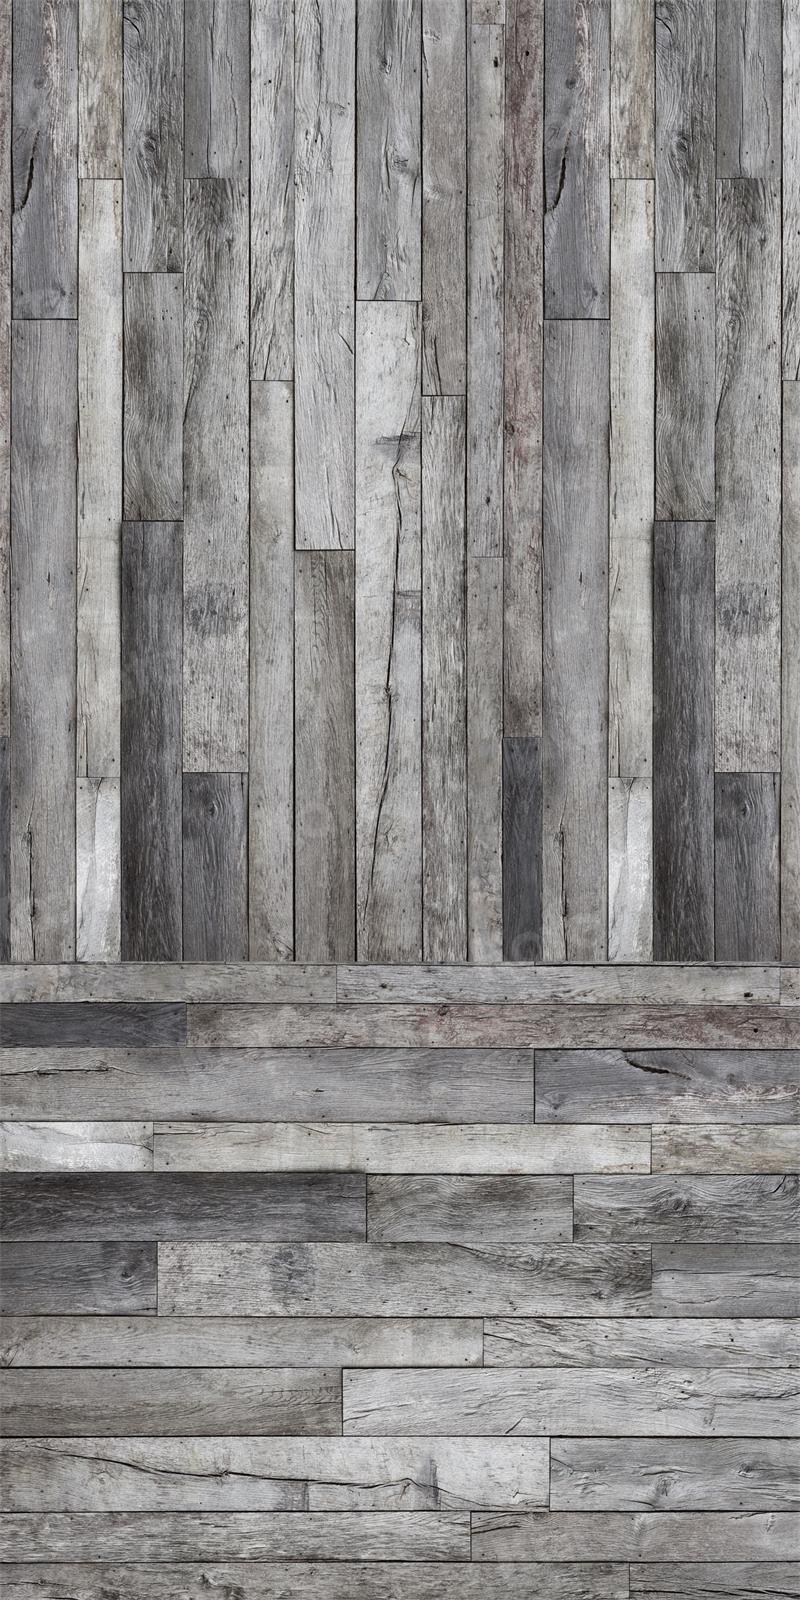 Kate Balayage la texture fissurée de toile de fond de planche de bois pour la photographie